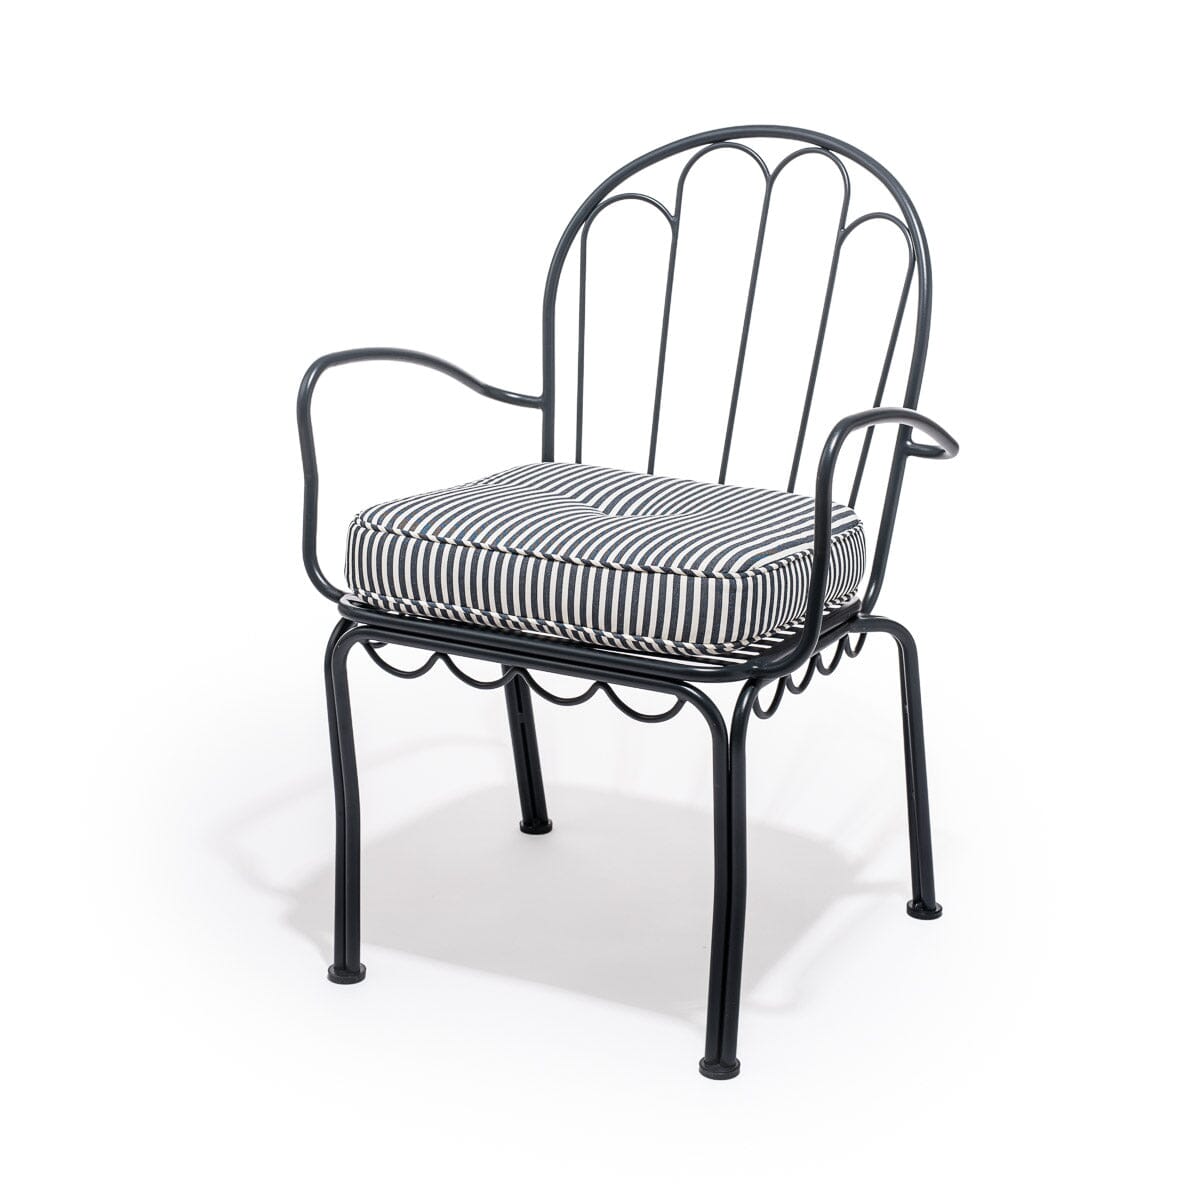 The Al Fresco Chair Cushion - Lauren's Navy Stripe Al Fresco Chair Cushion Business & Pleasure Co 